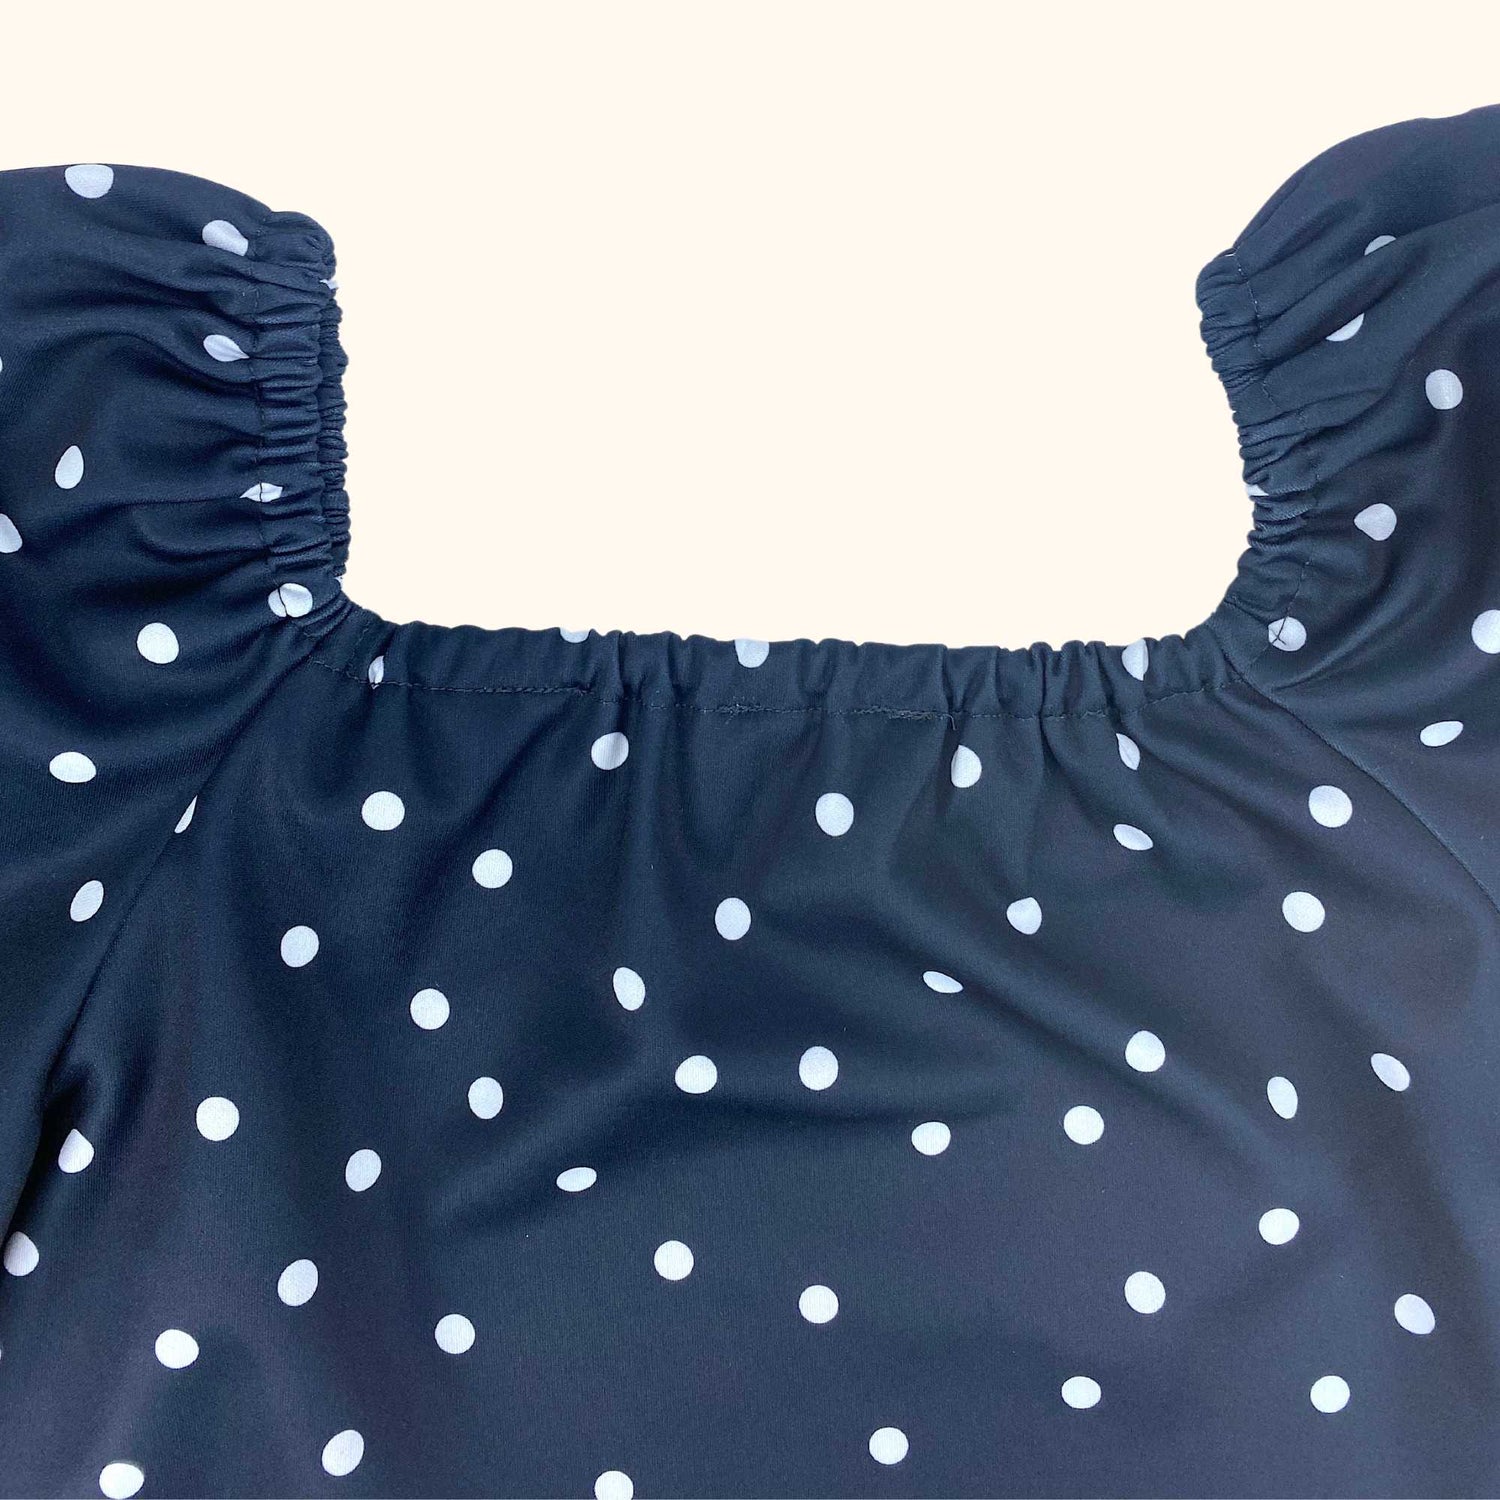 ASOS Polka Dot Navy Blue Short Sleeve Scuba Dress - Size 8 - ASOS - Dresses